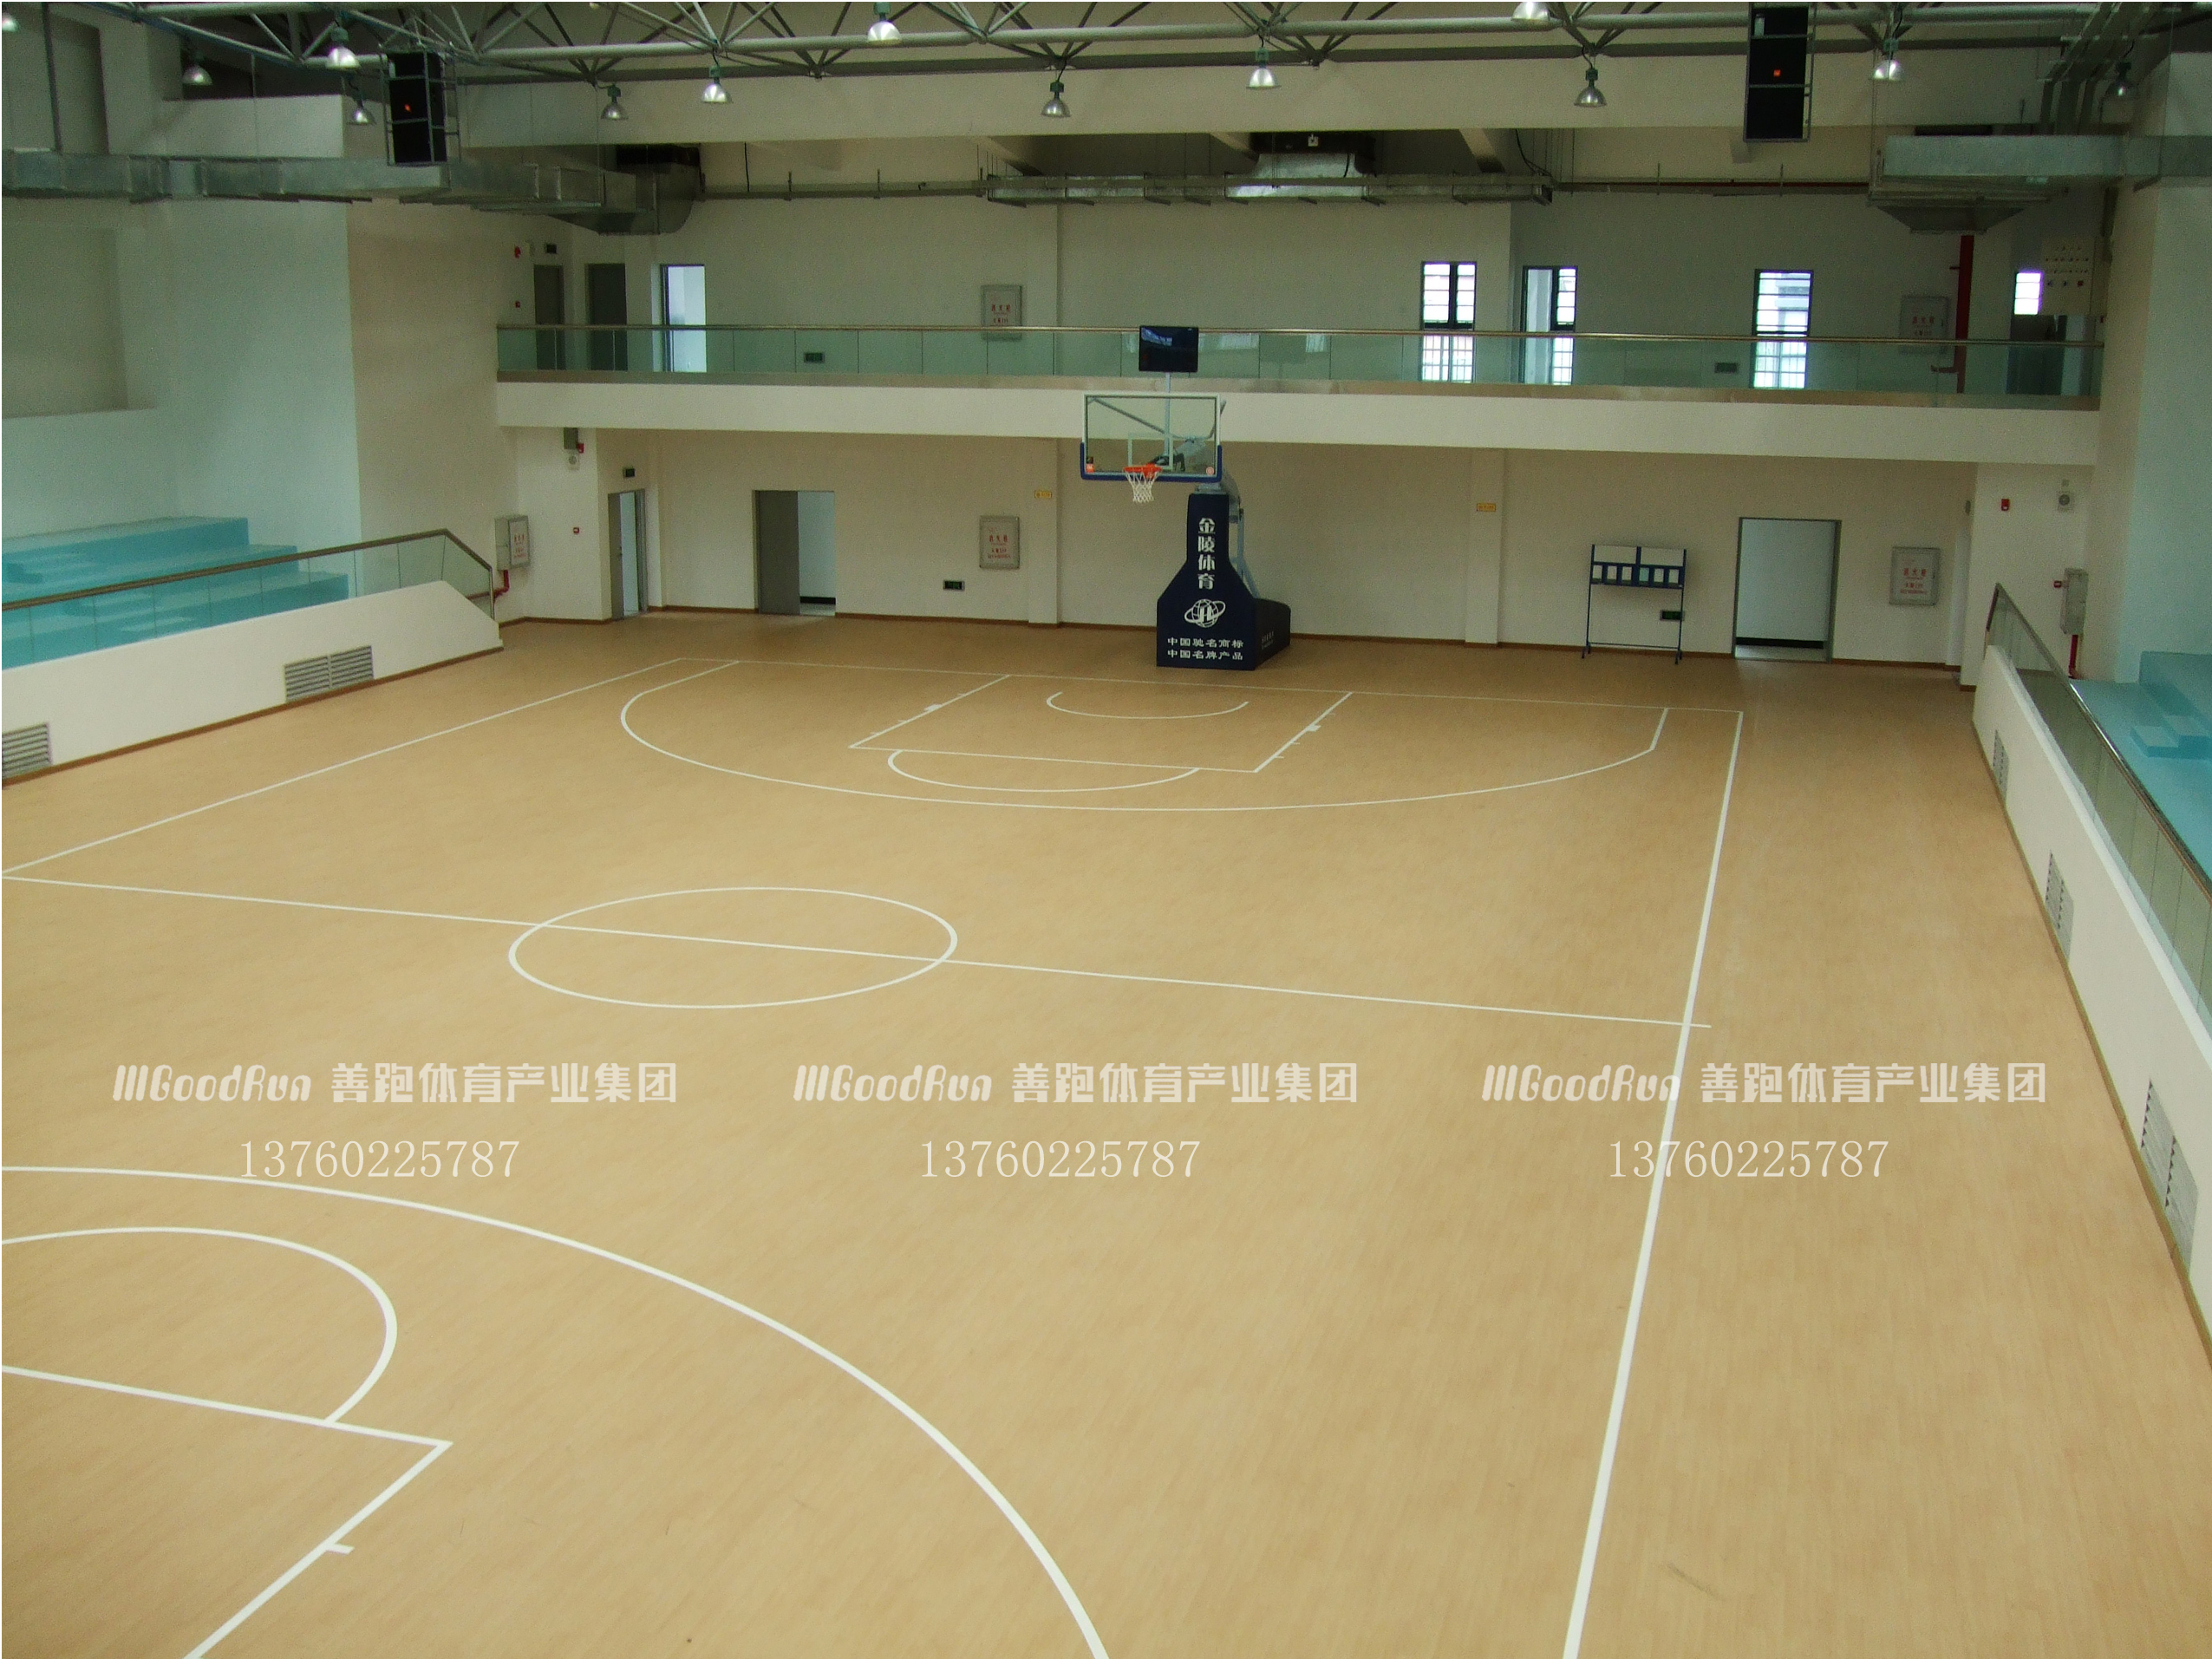 最新:篮球馆专用运动木地板价格